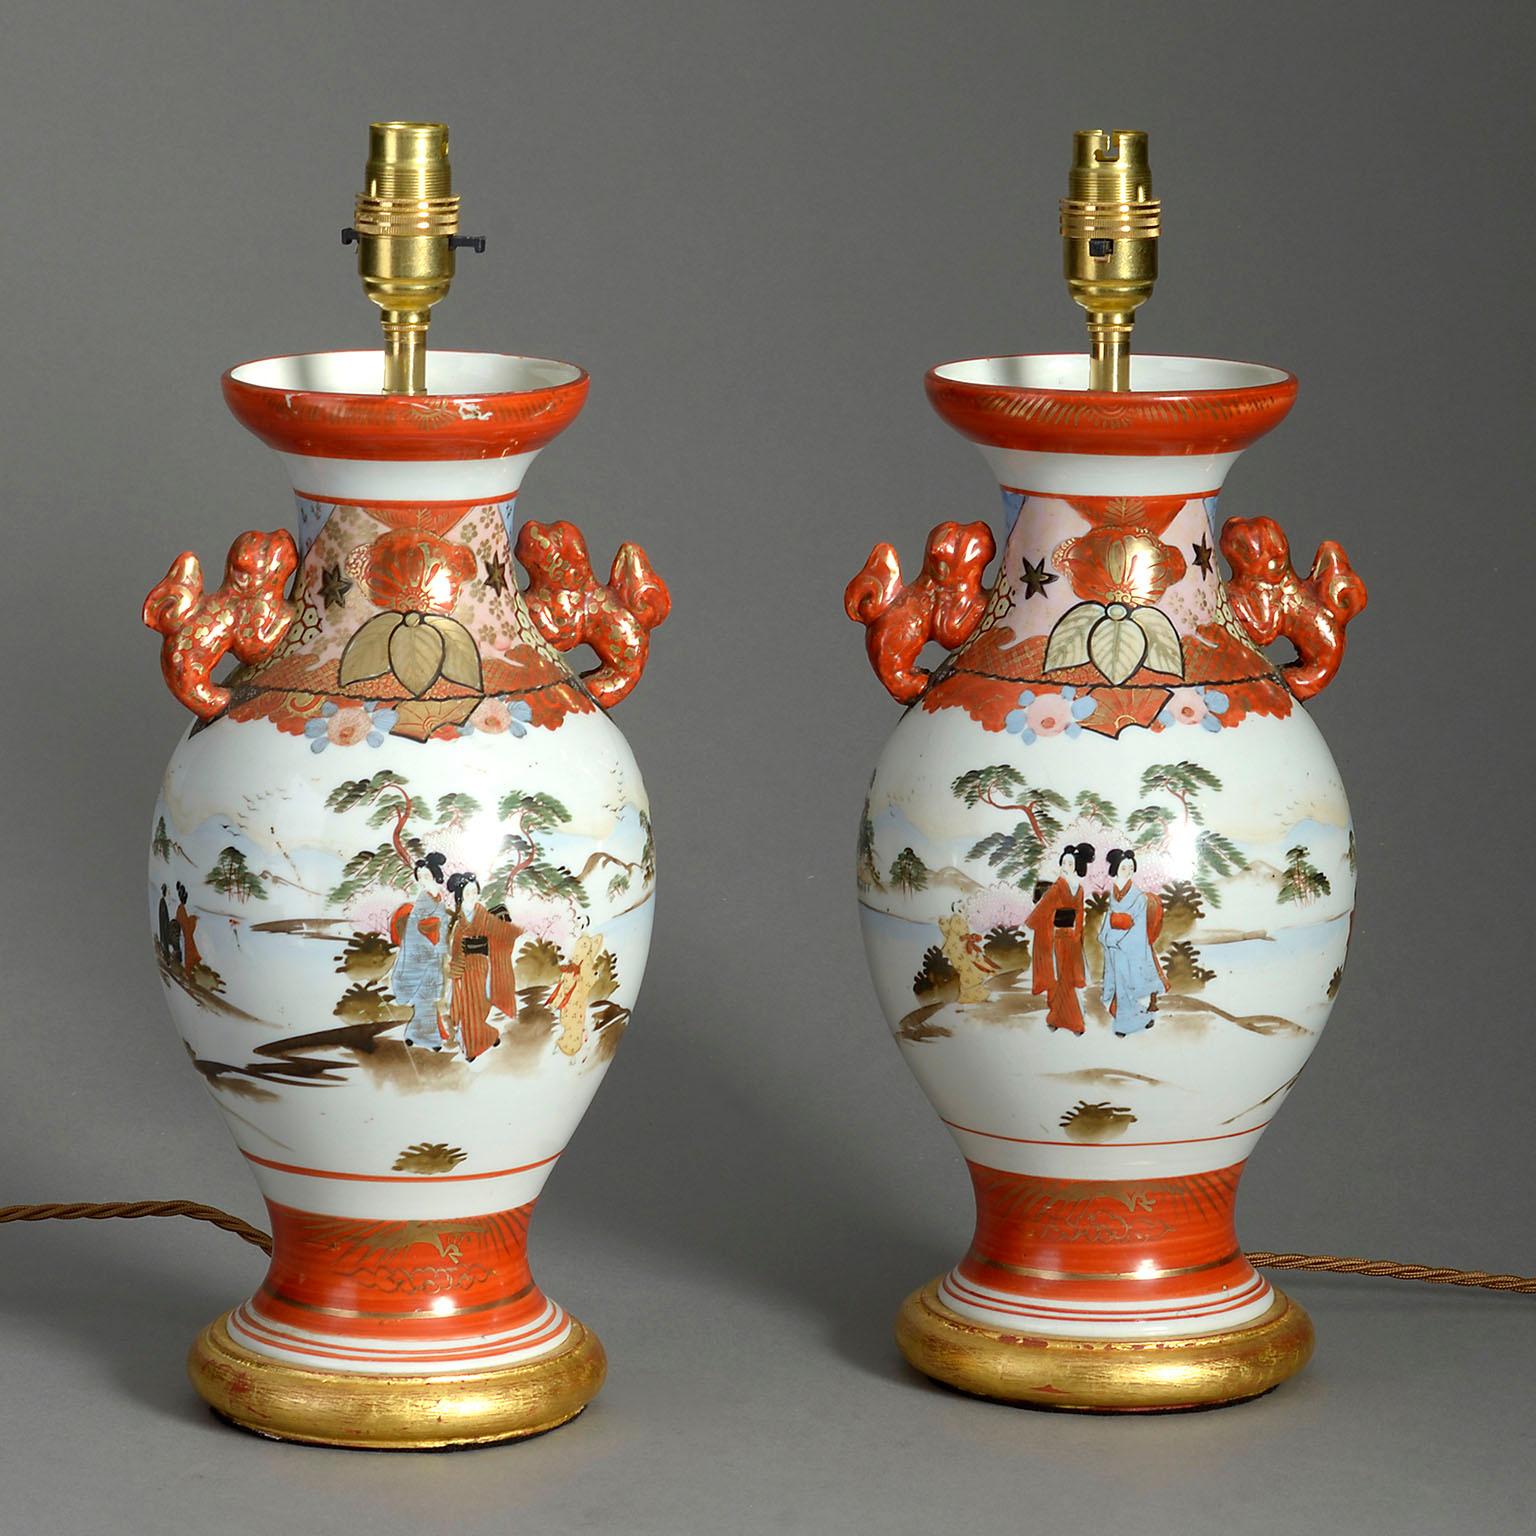 Ein Paar orange glasierte Satsuma-Vasen aus dem späten 19. Jahrhundert, jede mit Henkeln und einem bauchigen Körper, verziert mit höfischen Figuren in Landschaften. Jetzt auf gedrechselten Goldholzsockeln als Tischlampen